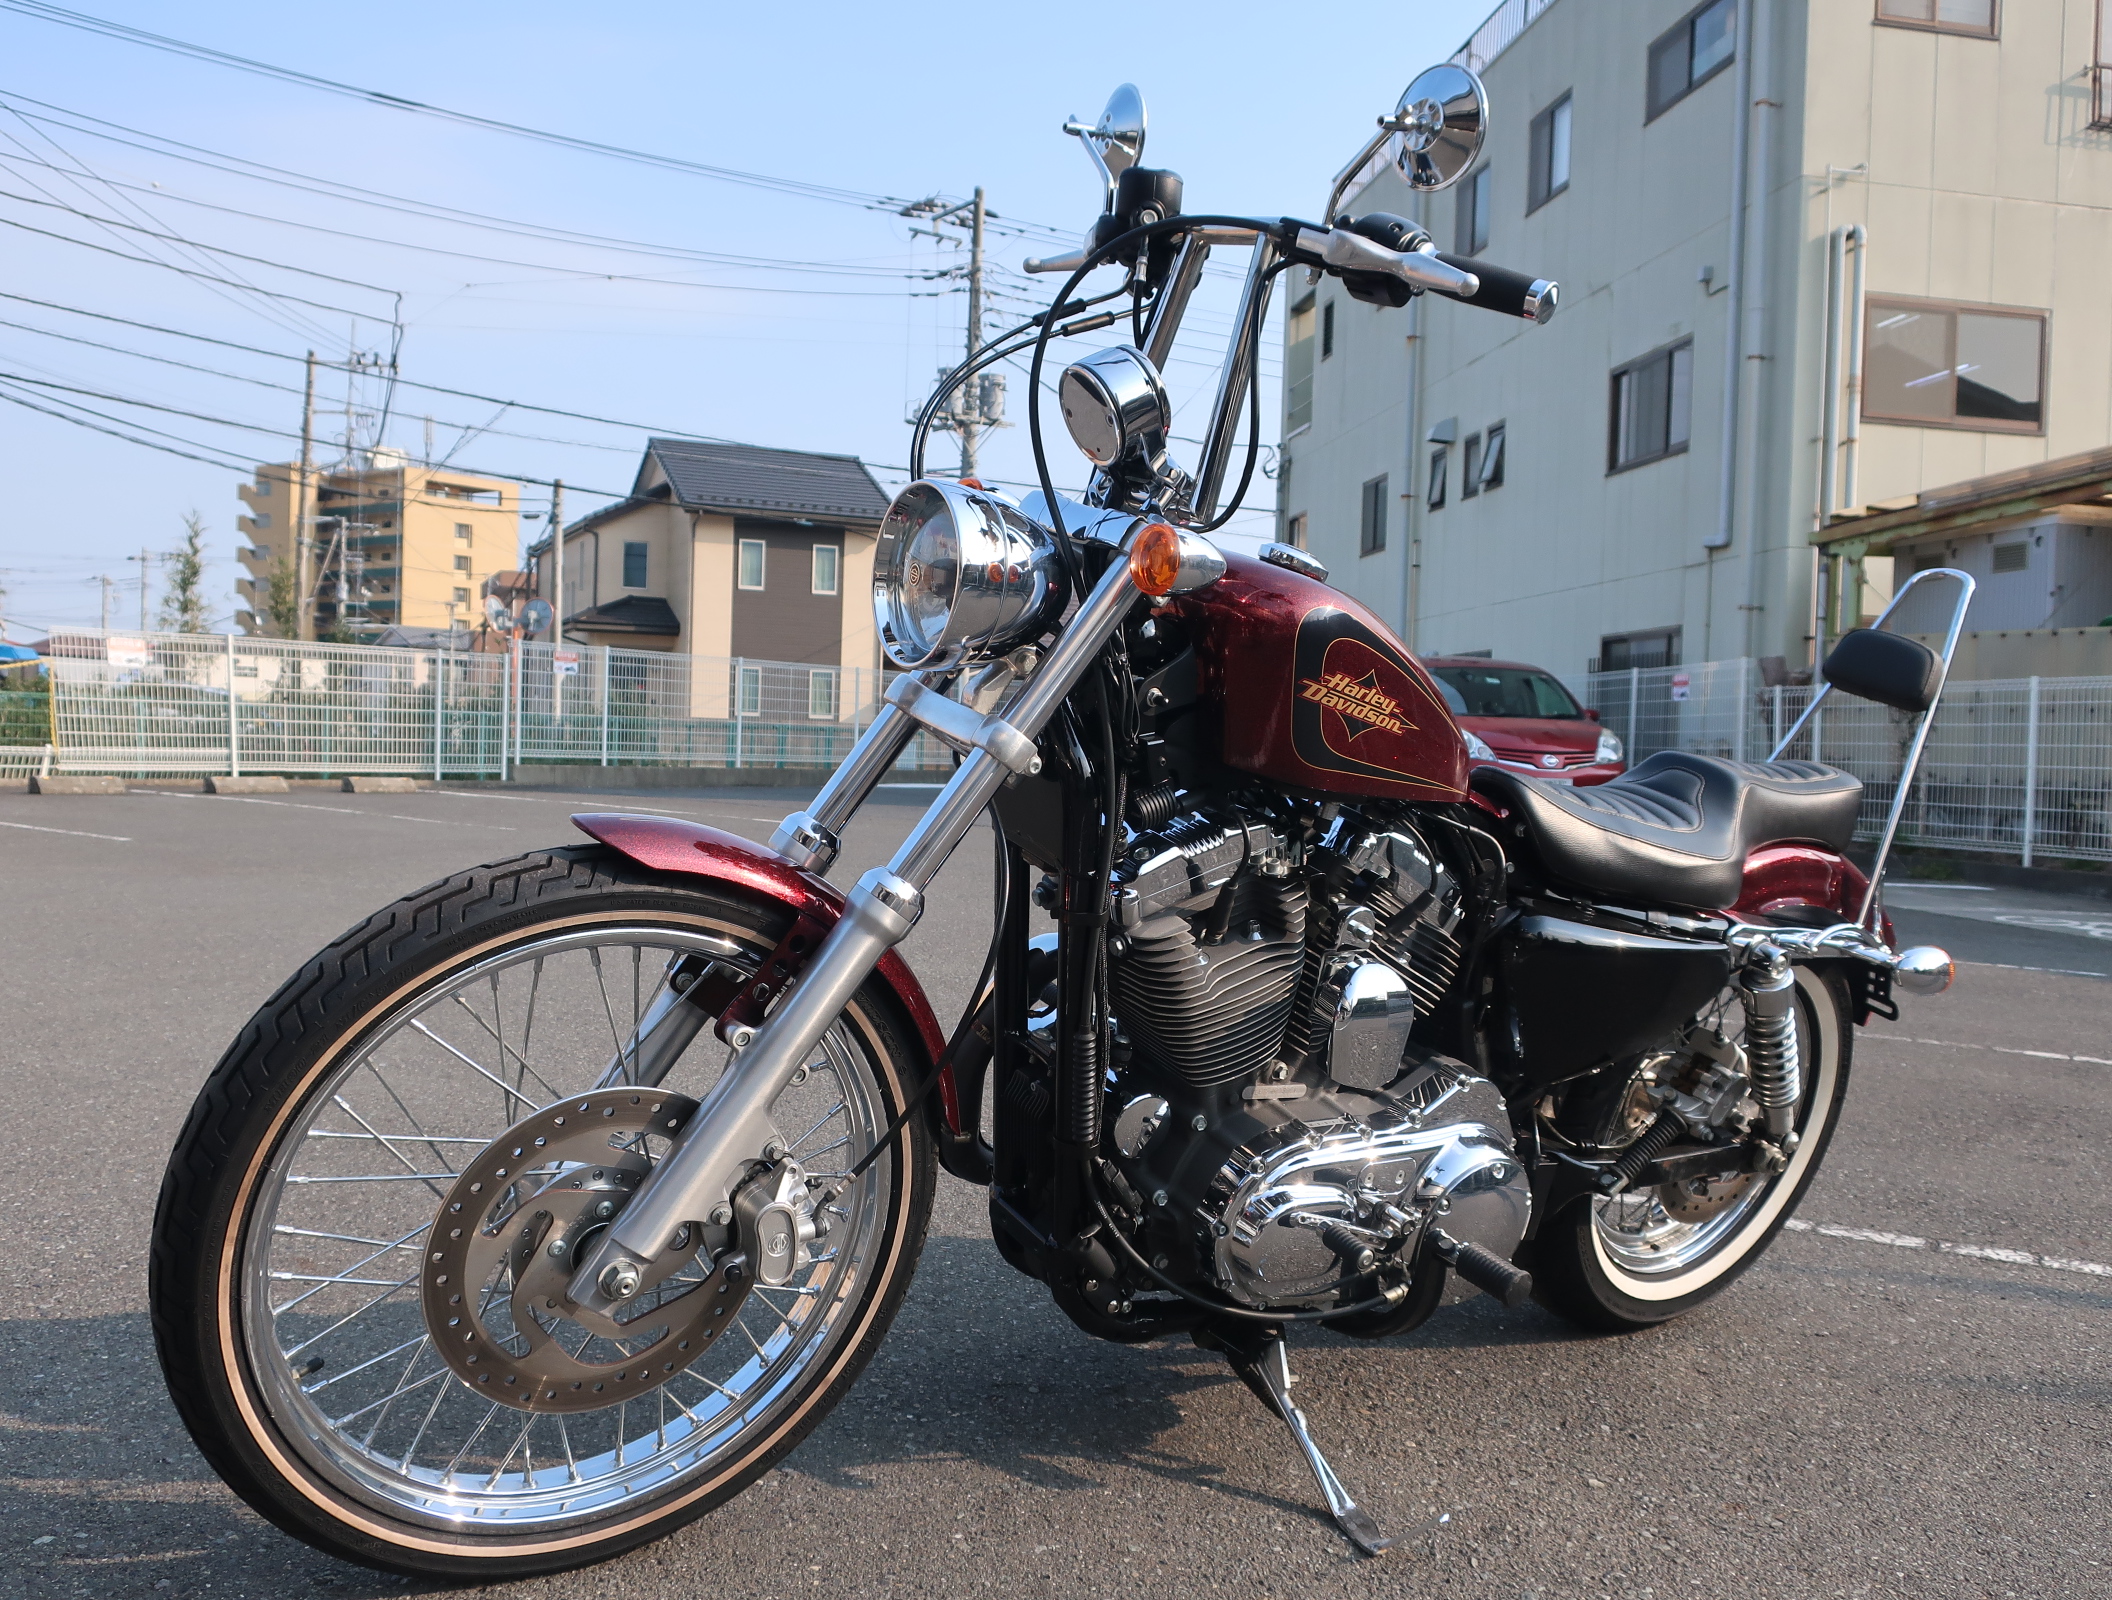 Xl10vフリスコcustom 最新情報 U Media ユーメディア 中古 バイク 新車バイク探しの決定版 神奈川 東京でバイク探すならユーメディア